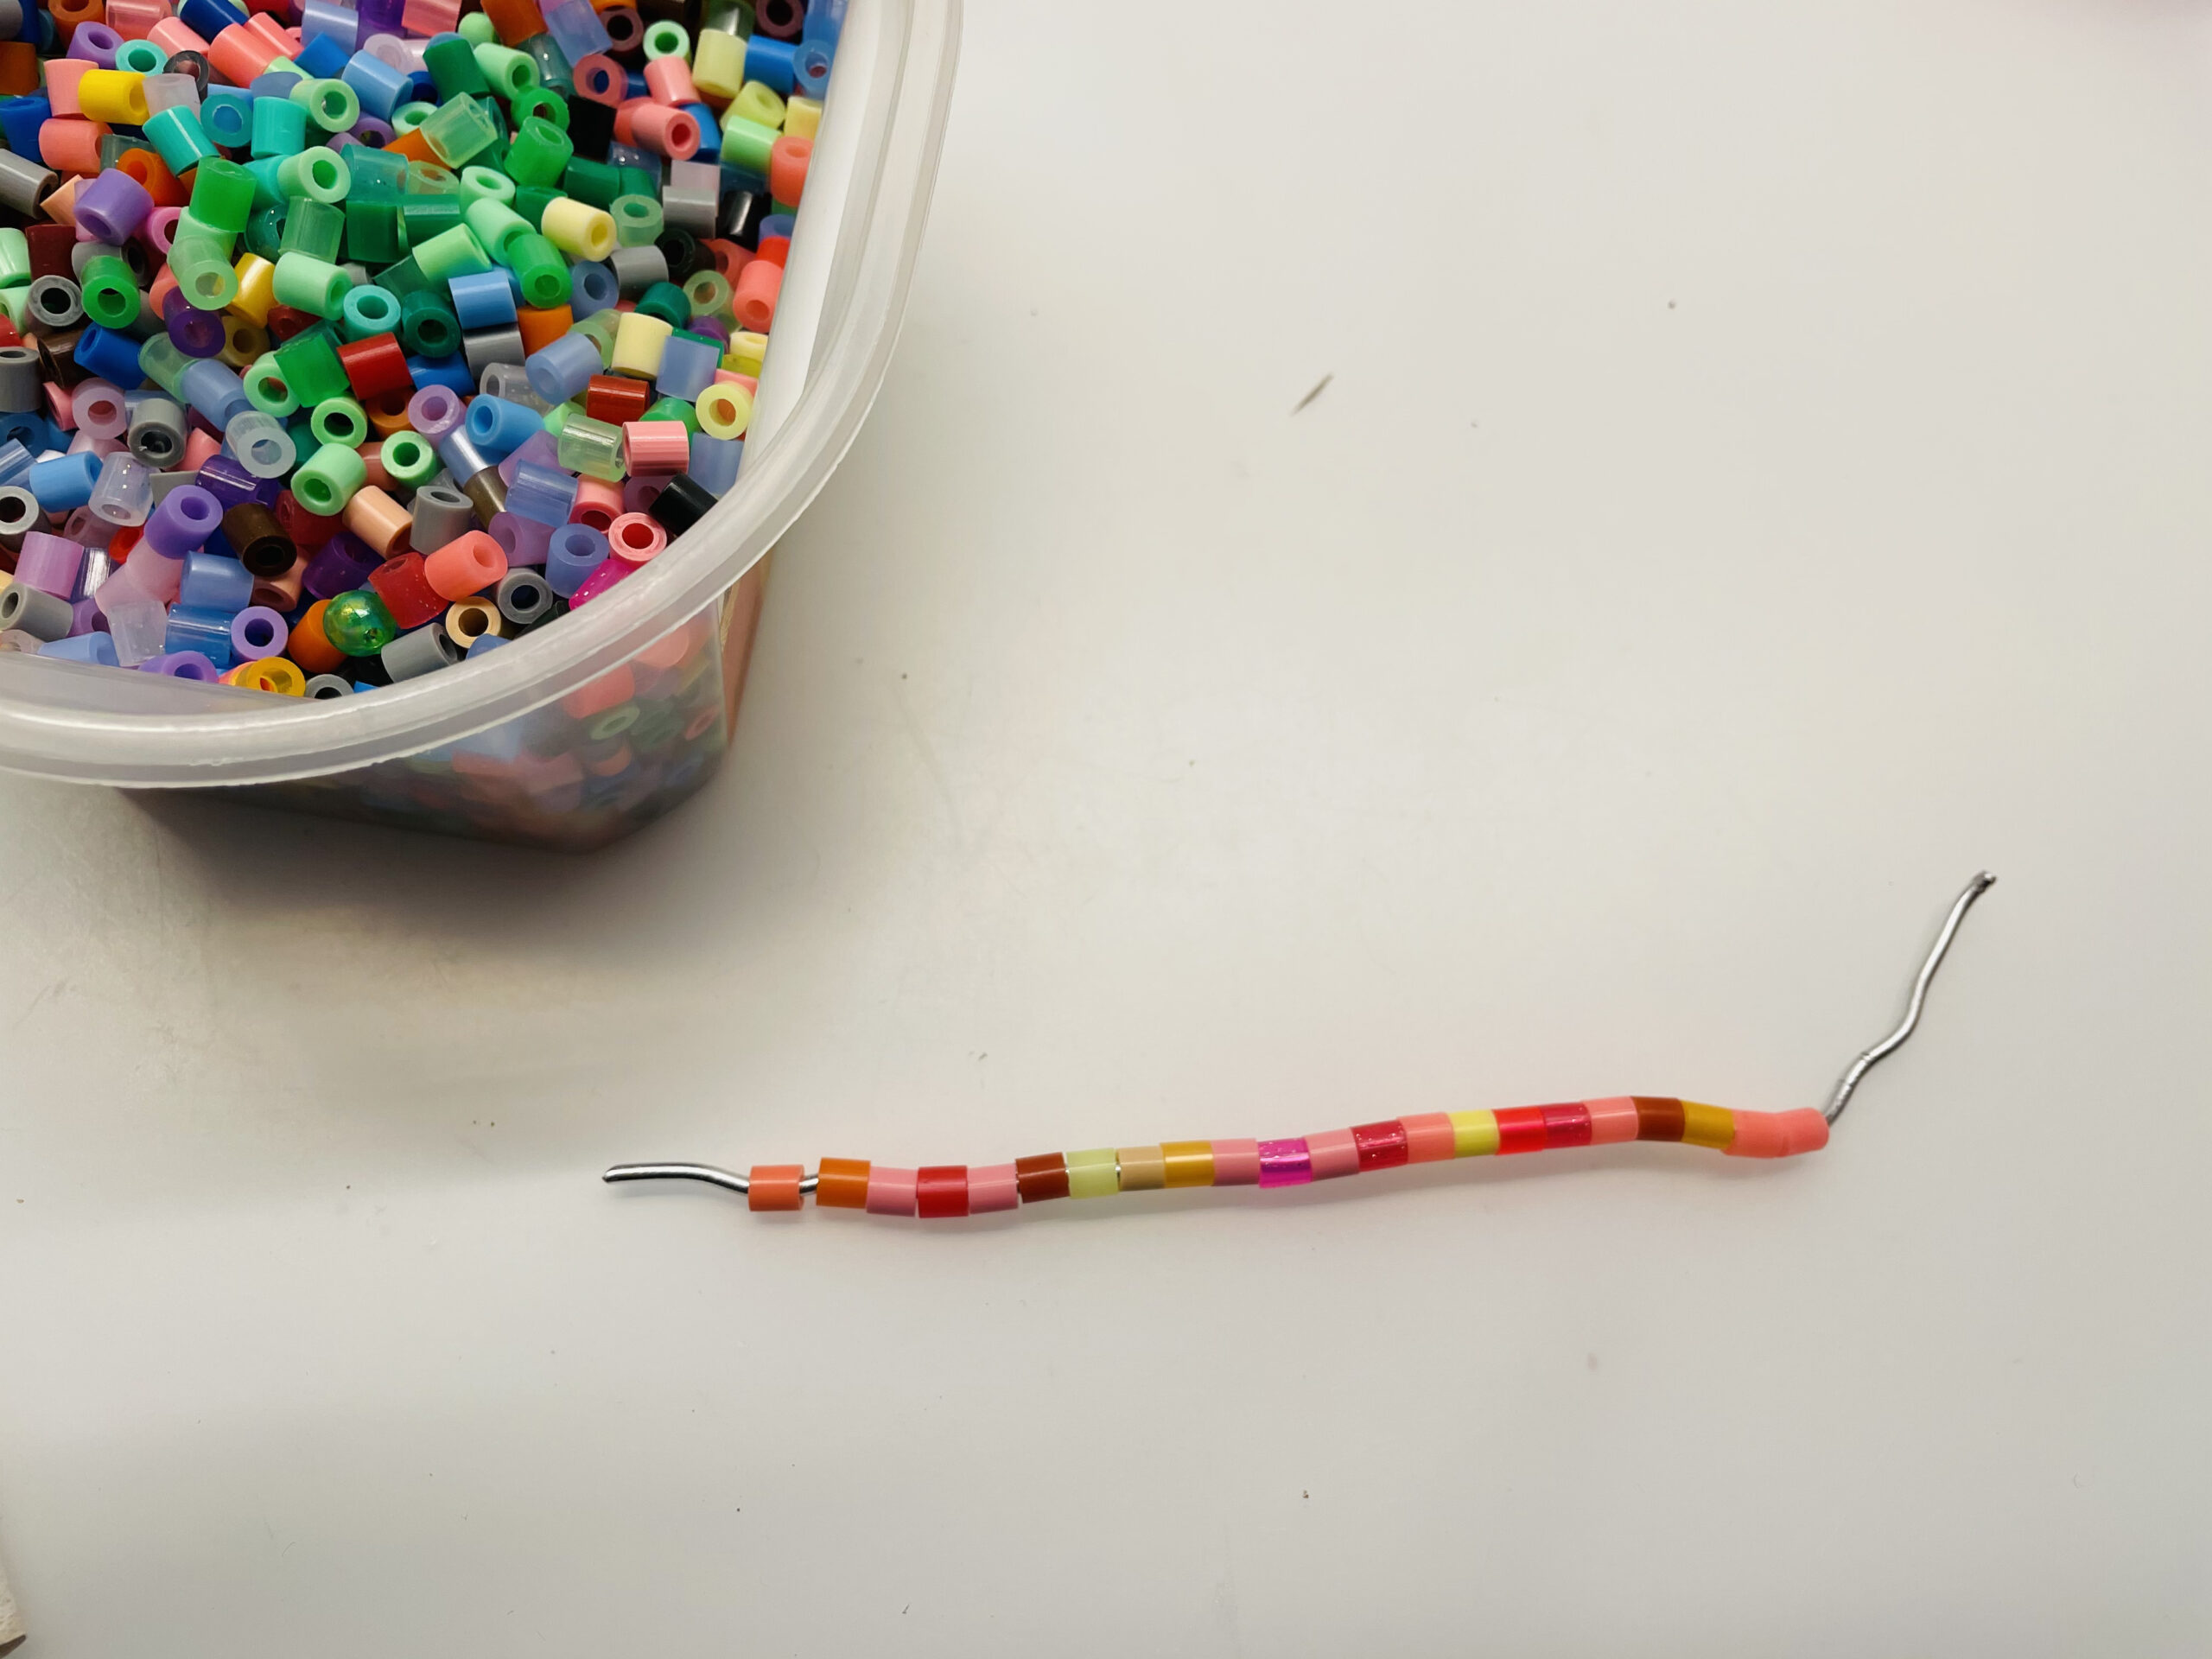 Bild zum Schritt 3 für das Bastel- und DIY-Abenteuer für Kinder: 'Füllt den kompletten Draht mit Perlen. Schiebt sie lückenlos zusammen.'